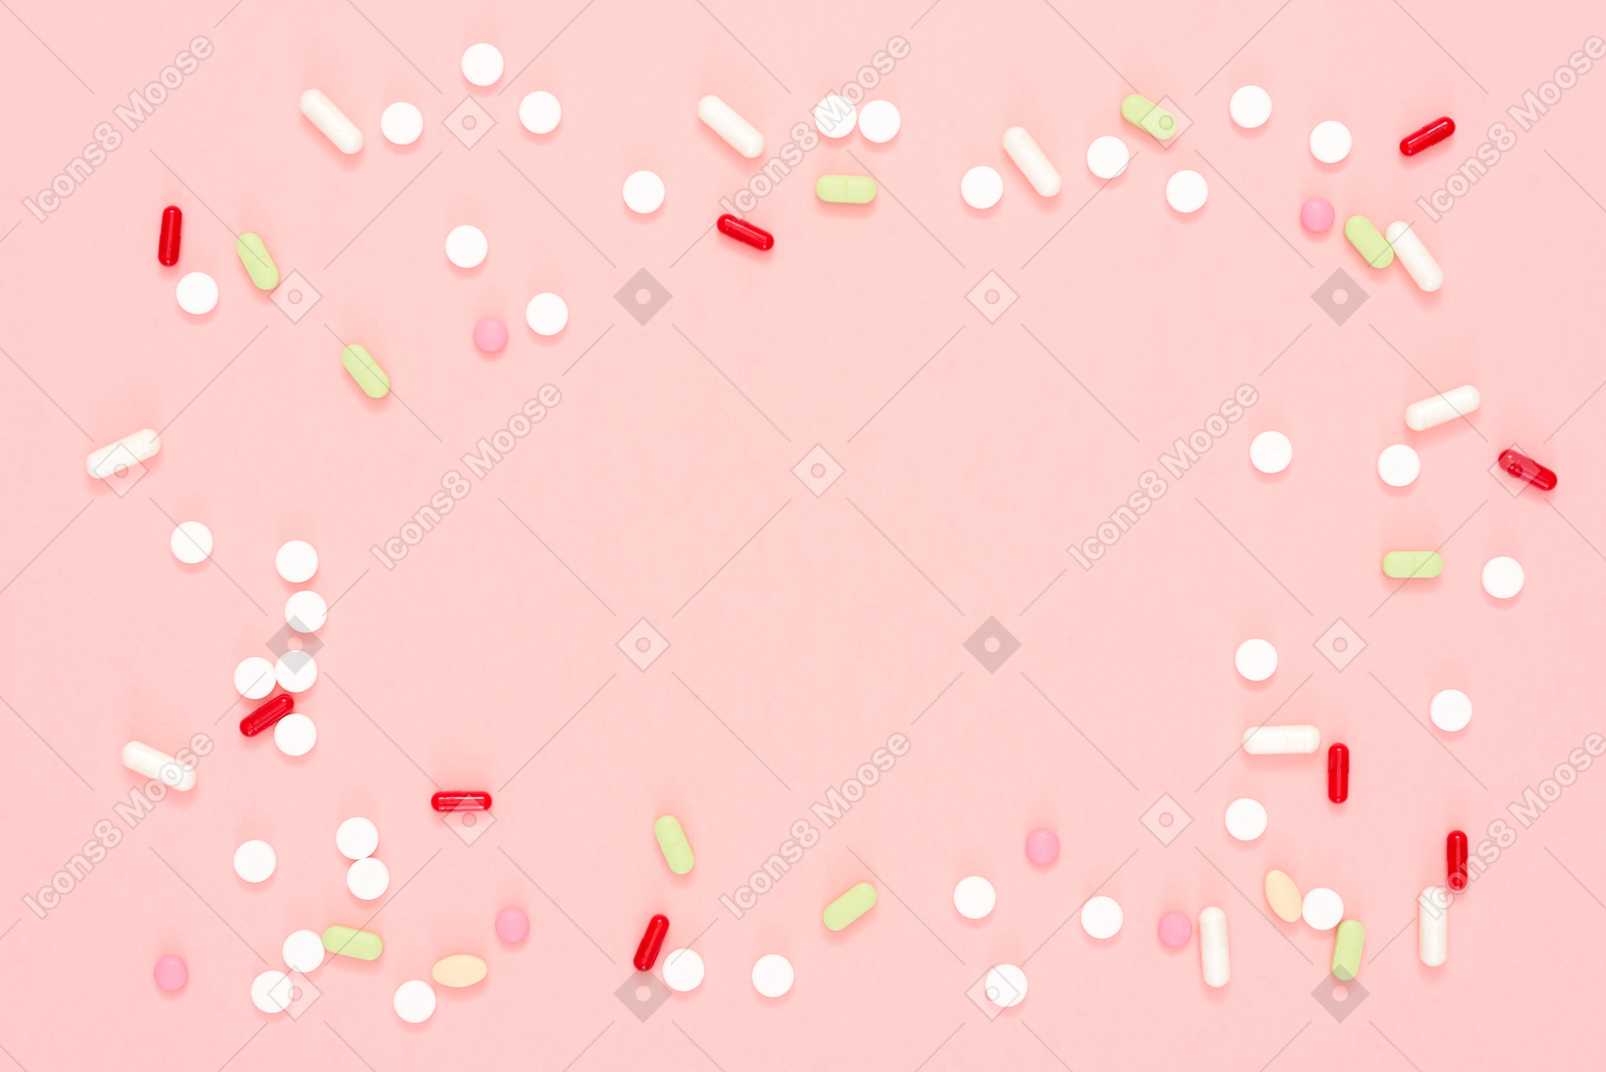 Pillole multicolori sparse